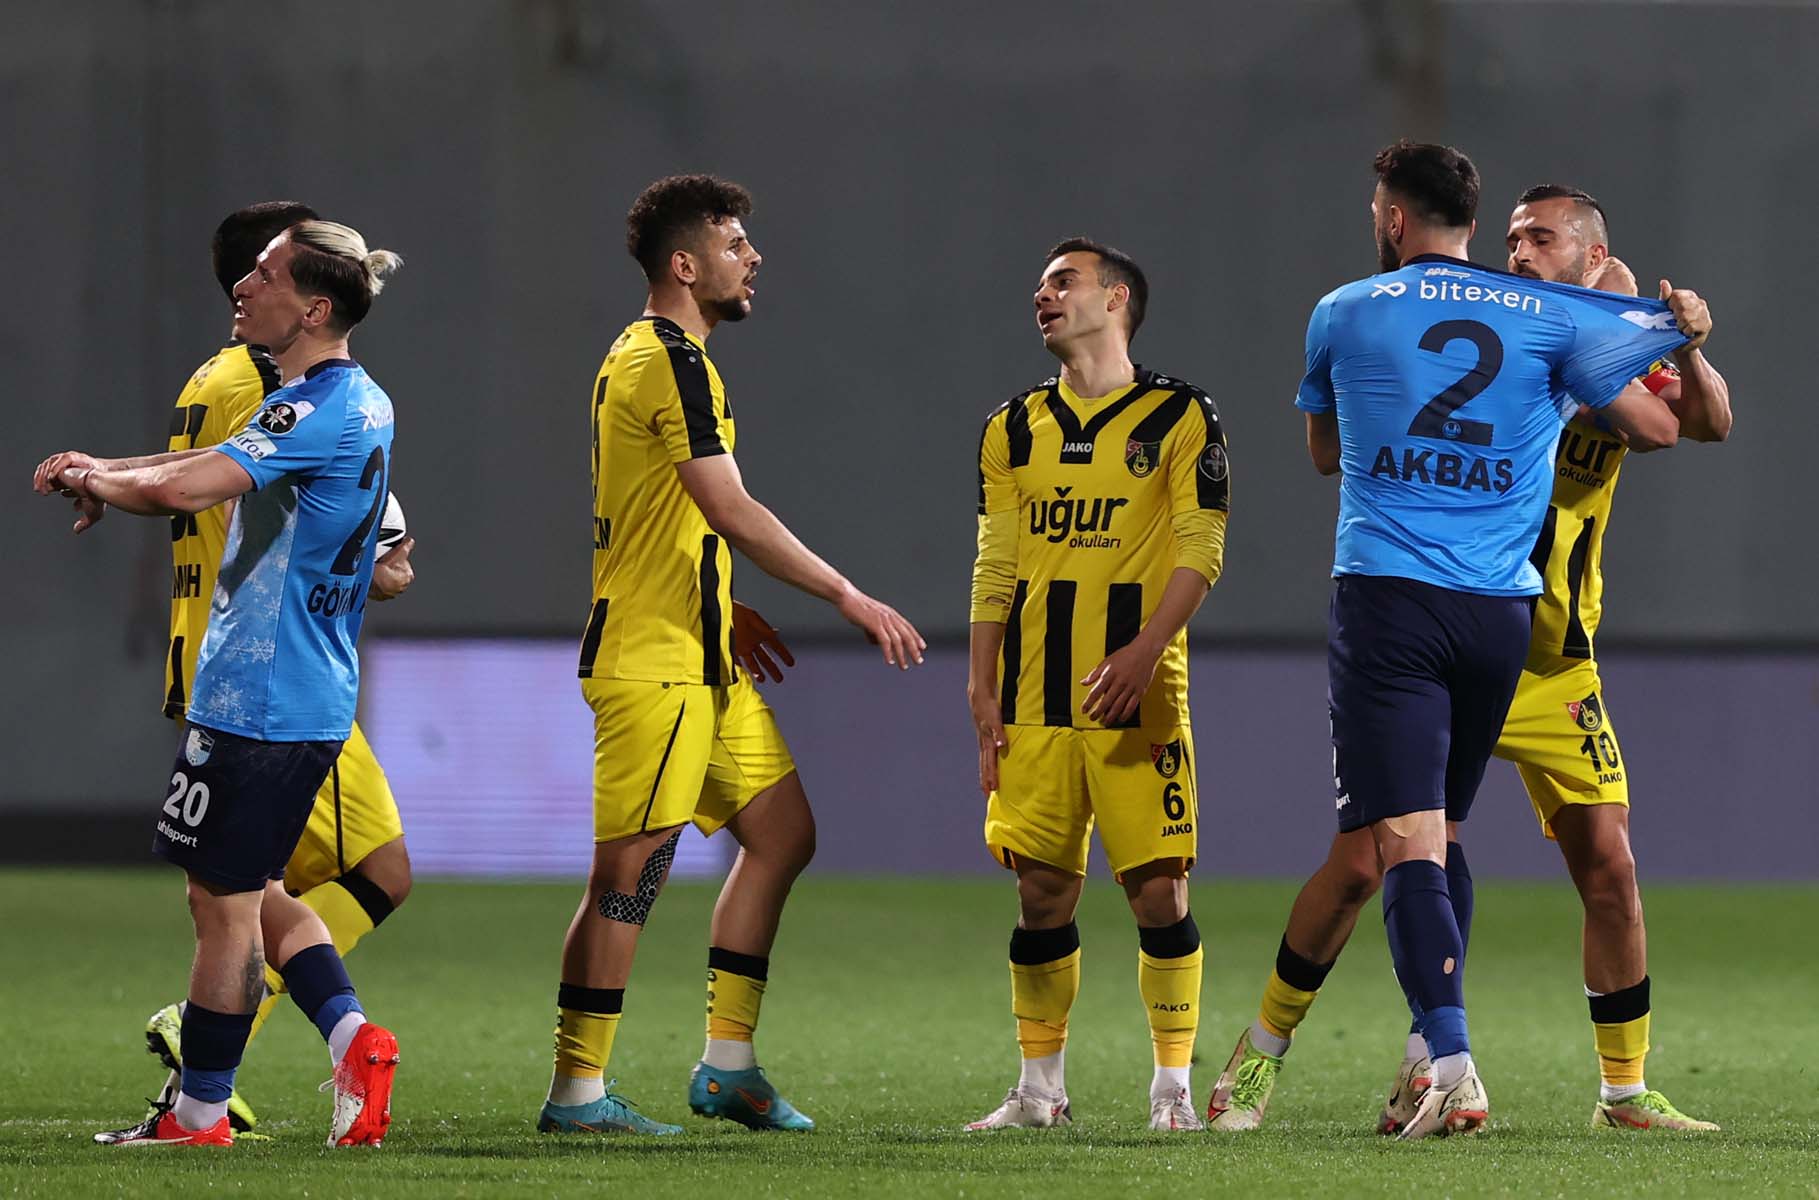 İstanbulspor 1 - 2 Erzurumspor |Maç sonucu 